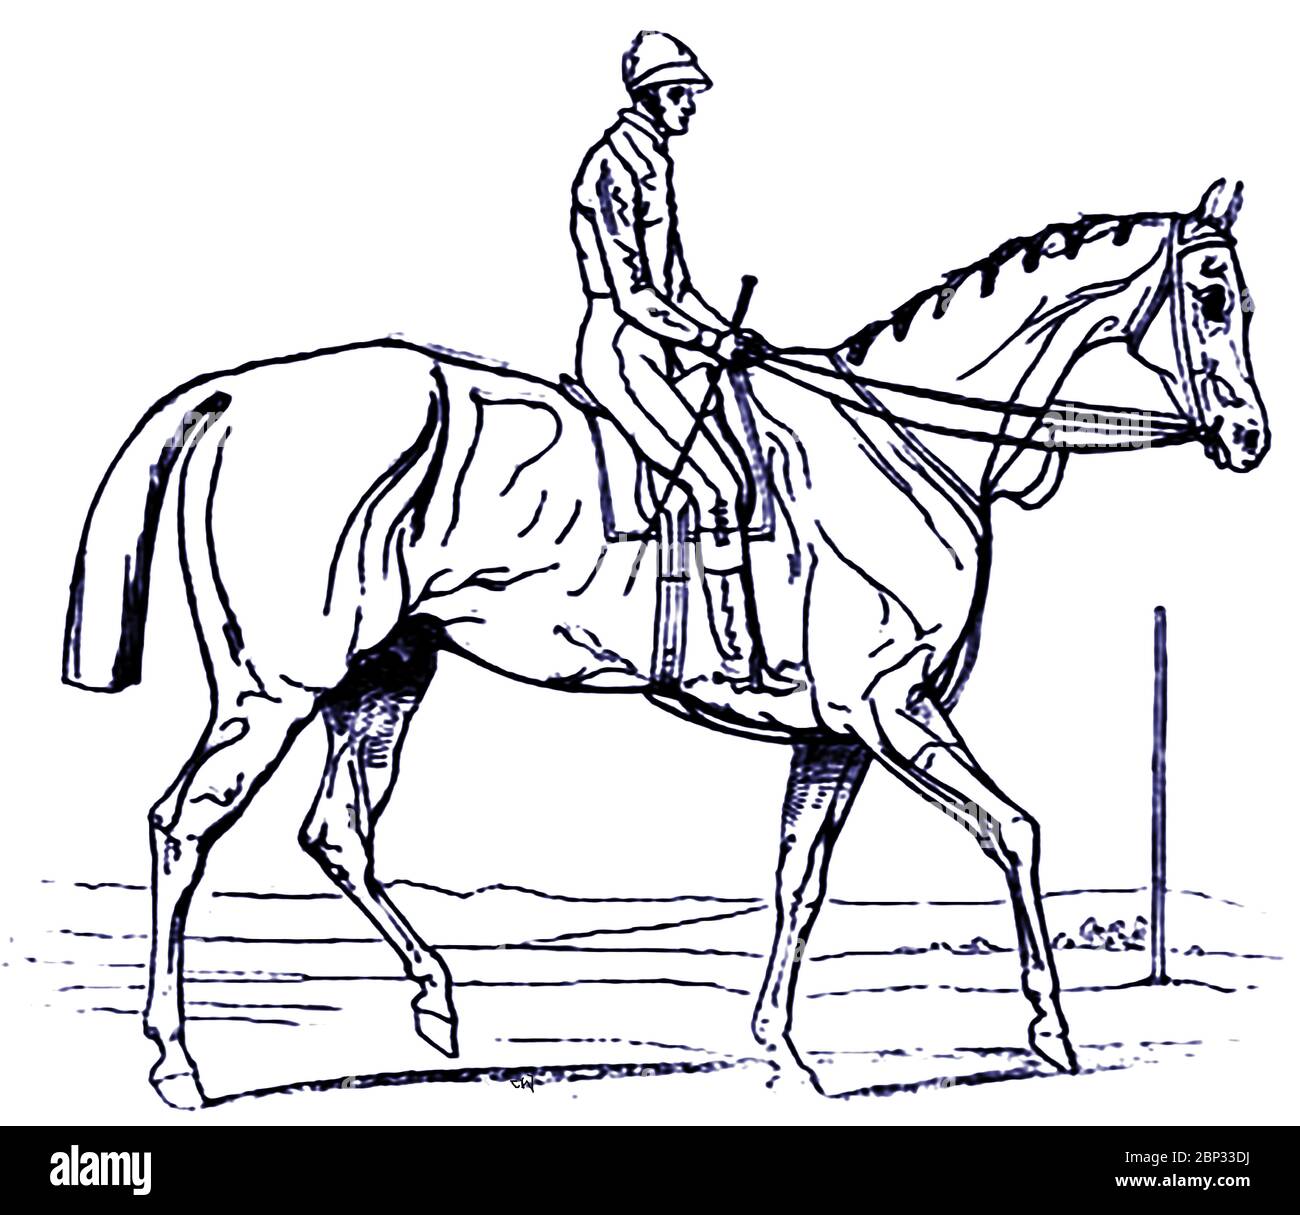 Un croquis du gagnant Attila du Derby Epsom 1842 (Royaume-Uni) et de son jockey Bill Scott, tiré sur l'hippodrome immédiatement après la course. Attila (1839–1846) était un étalon et une race de race de cheval de race britannique. Il est mort à l'âge de sept ans suite à des blessures subies lors d'un accident à bord d'un navire dans la Manche. L'éleveur était le colonel Hancox, l'entraîneur John Scott et le maître-major George Anson. Le pilote est William 'Bill' Scott frère de l'entraîneur de Whitewall stables à Malton, dans le North Yorkshire. Bill aurait dit sur son lit de mort que "n'avait jamais tiré un cheval dans sa vie" Banque D'Images